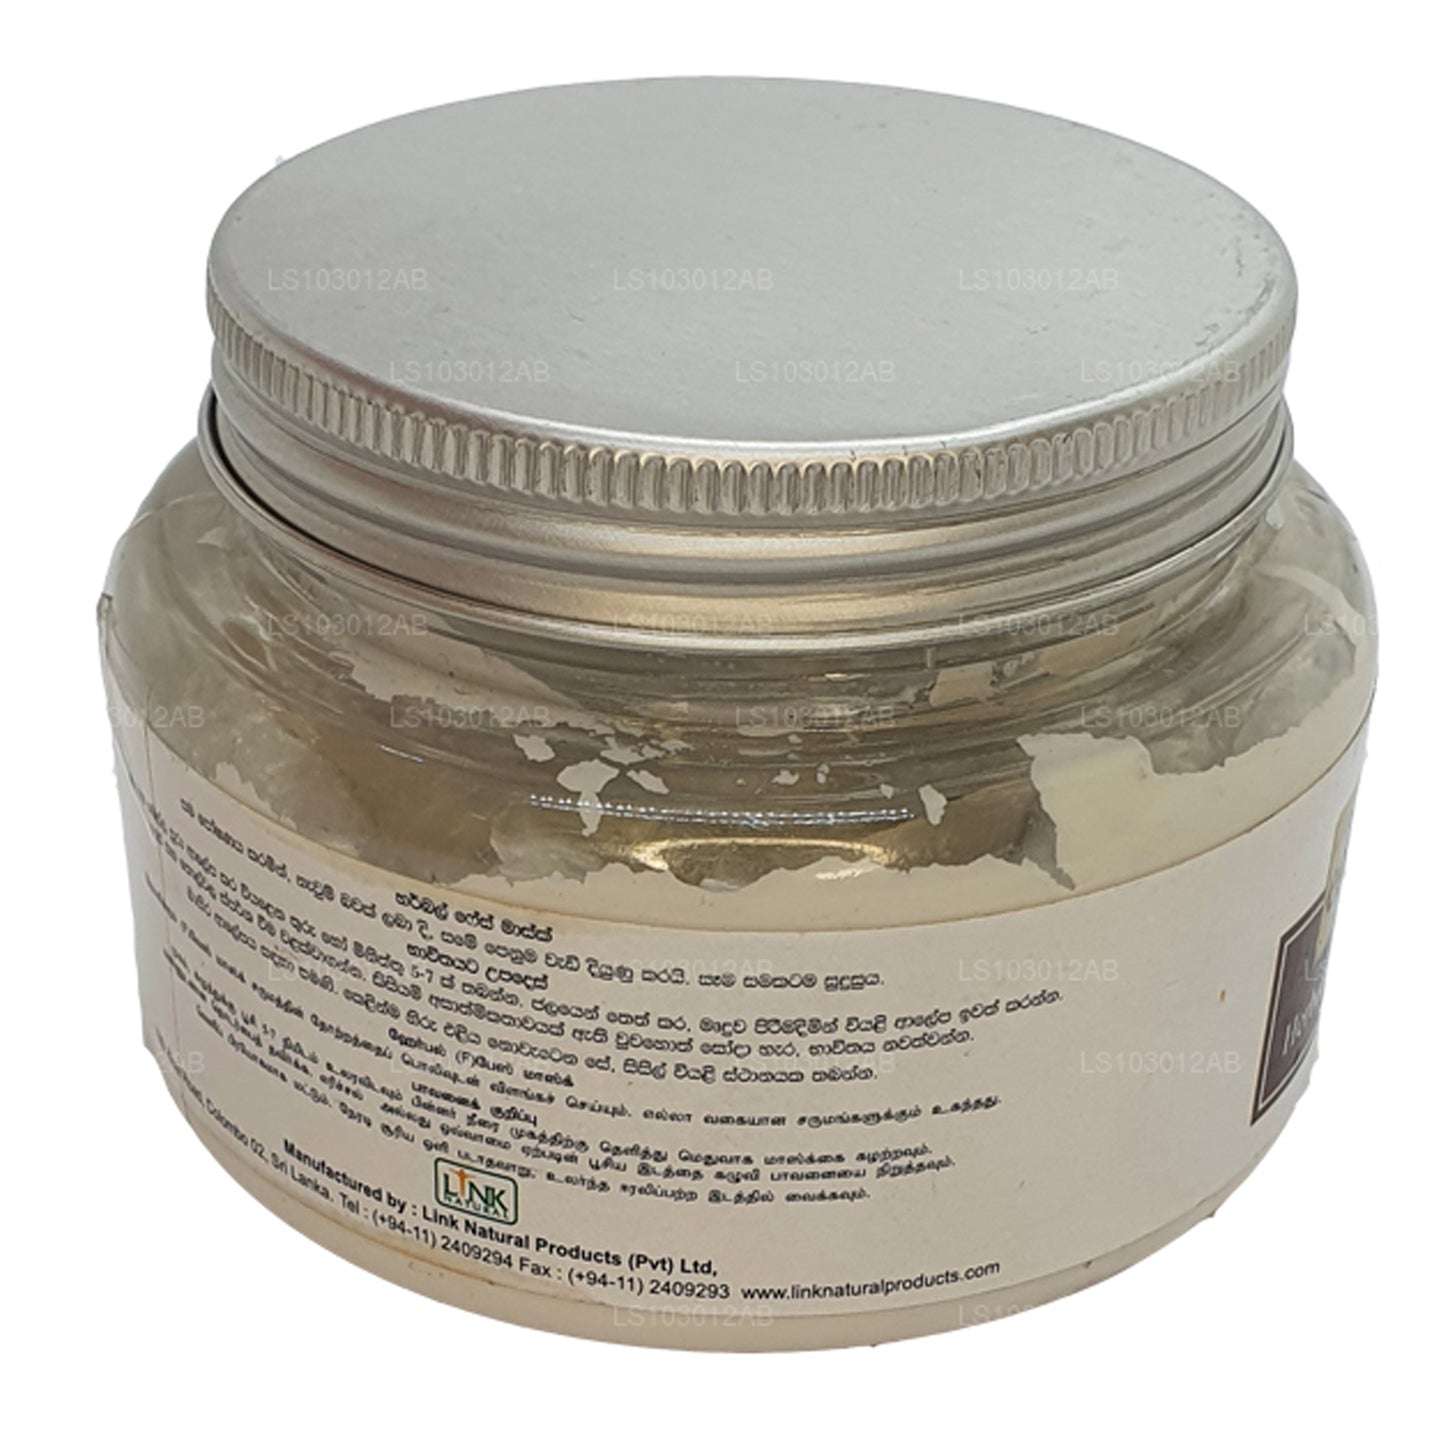 Link Natural Earth Essence Herbal gezichtsmasker (200 g)